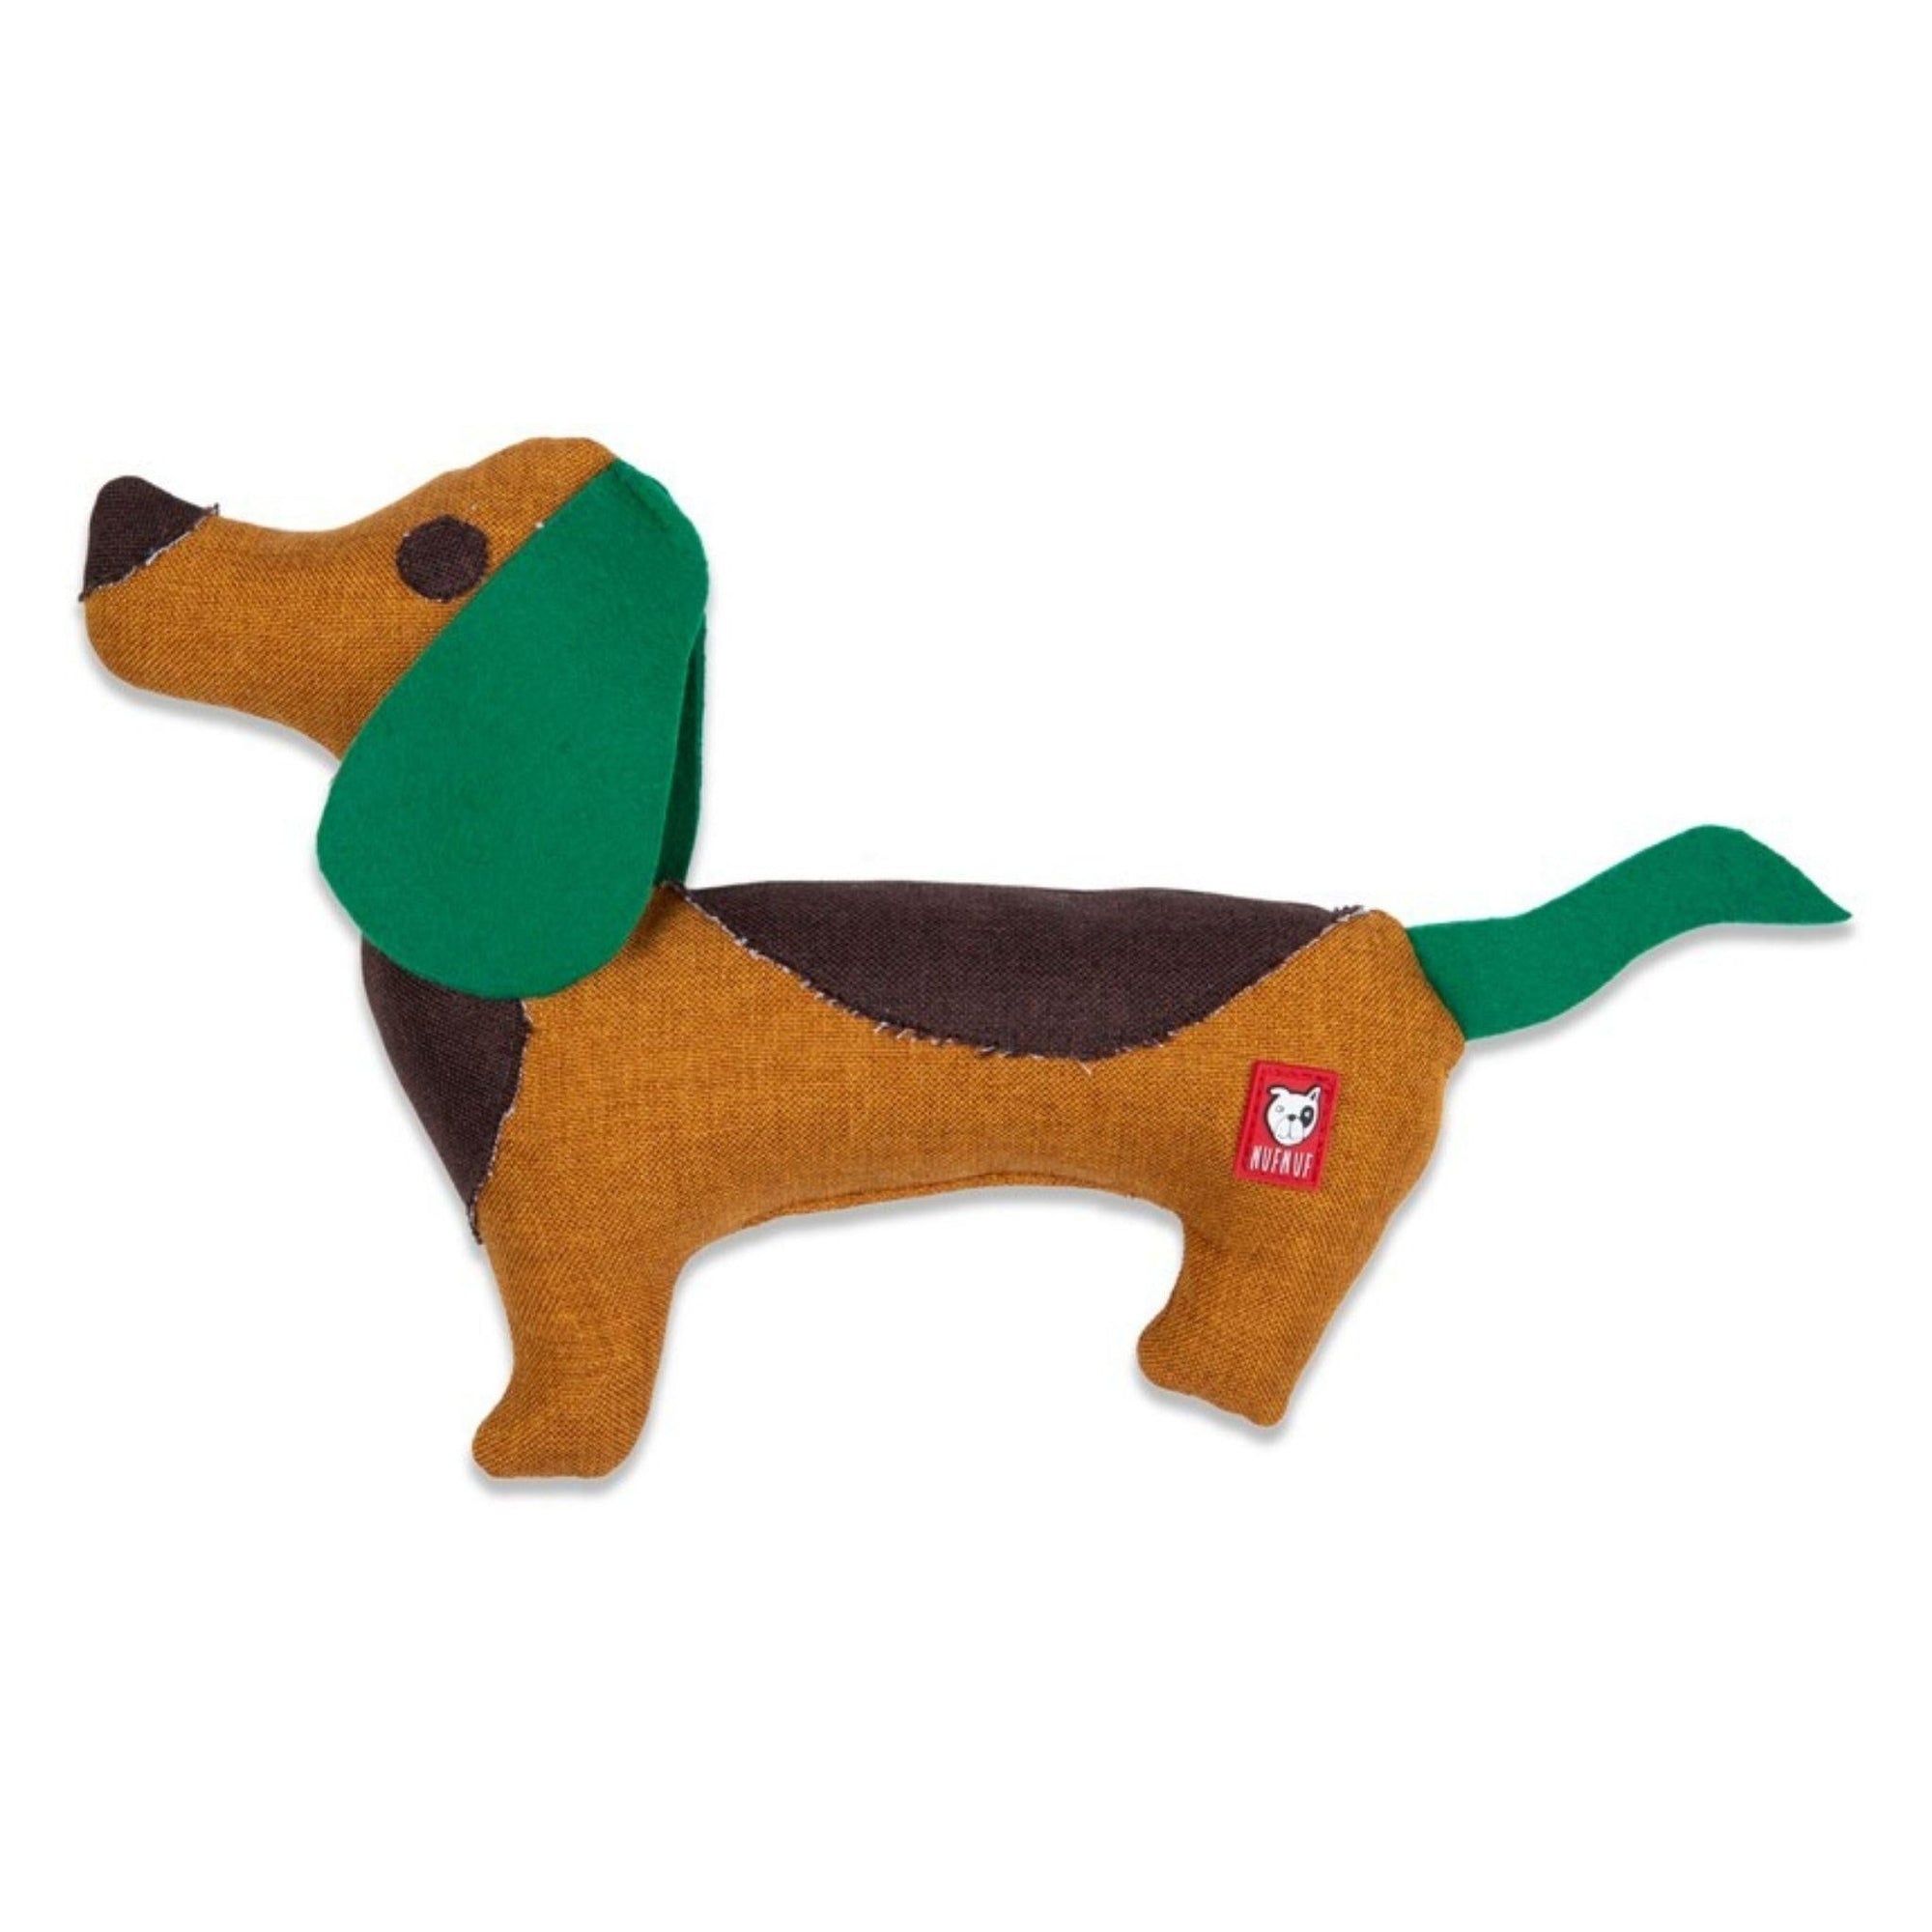 Artikel mit dem Namen NufNuf Upcycle Spielzeug Rocky im Shop von zoo.de , dem Onlineshop für nachhaltiges Hundefutter und Katzenfutter.